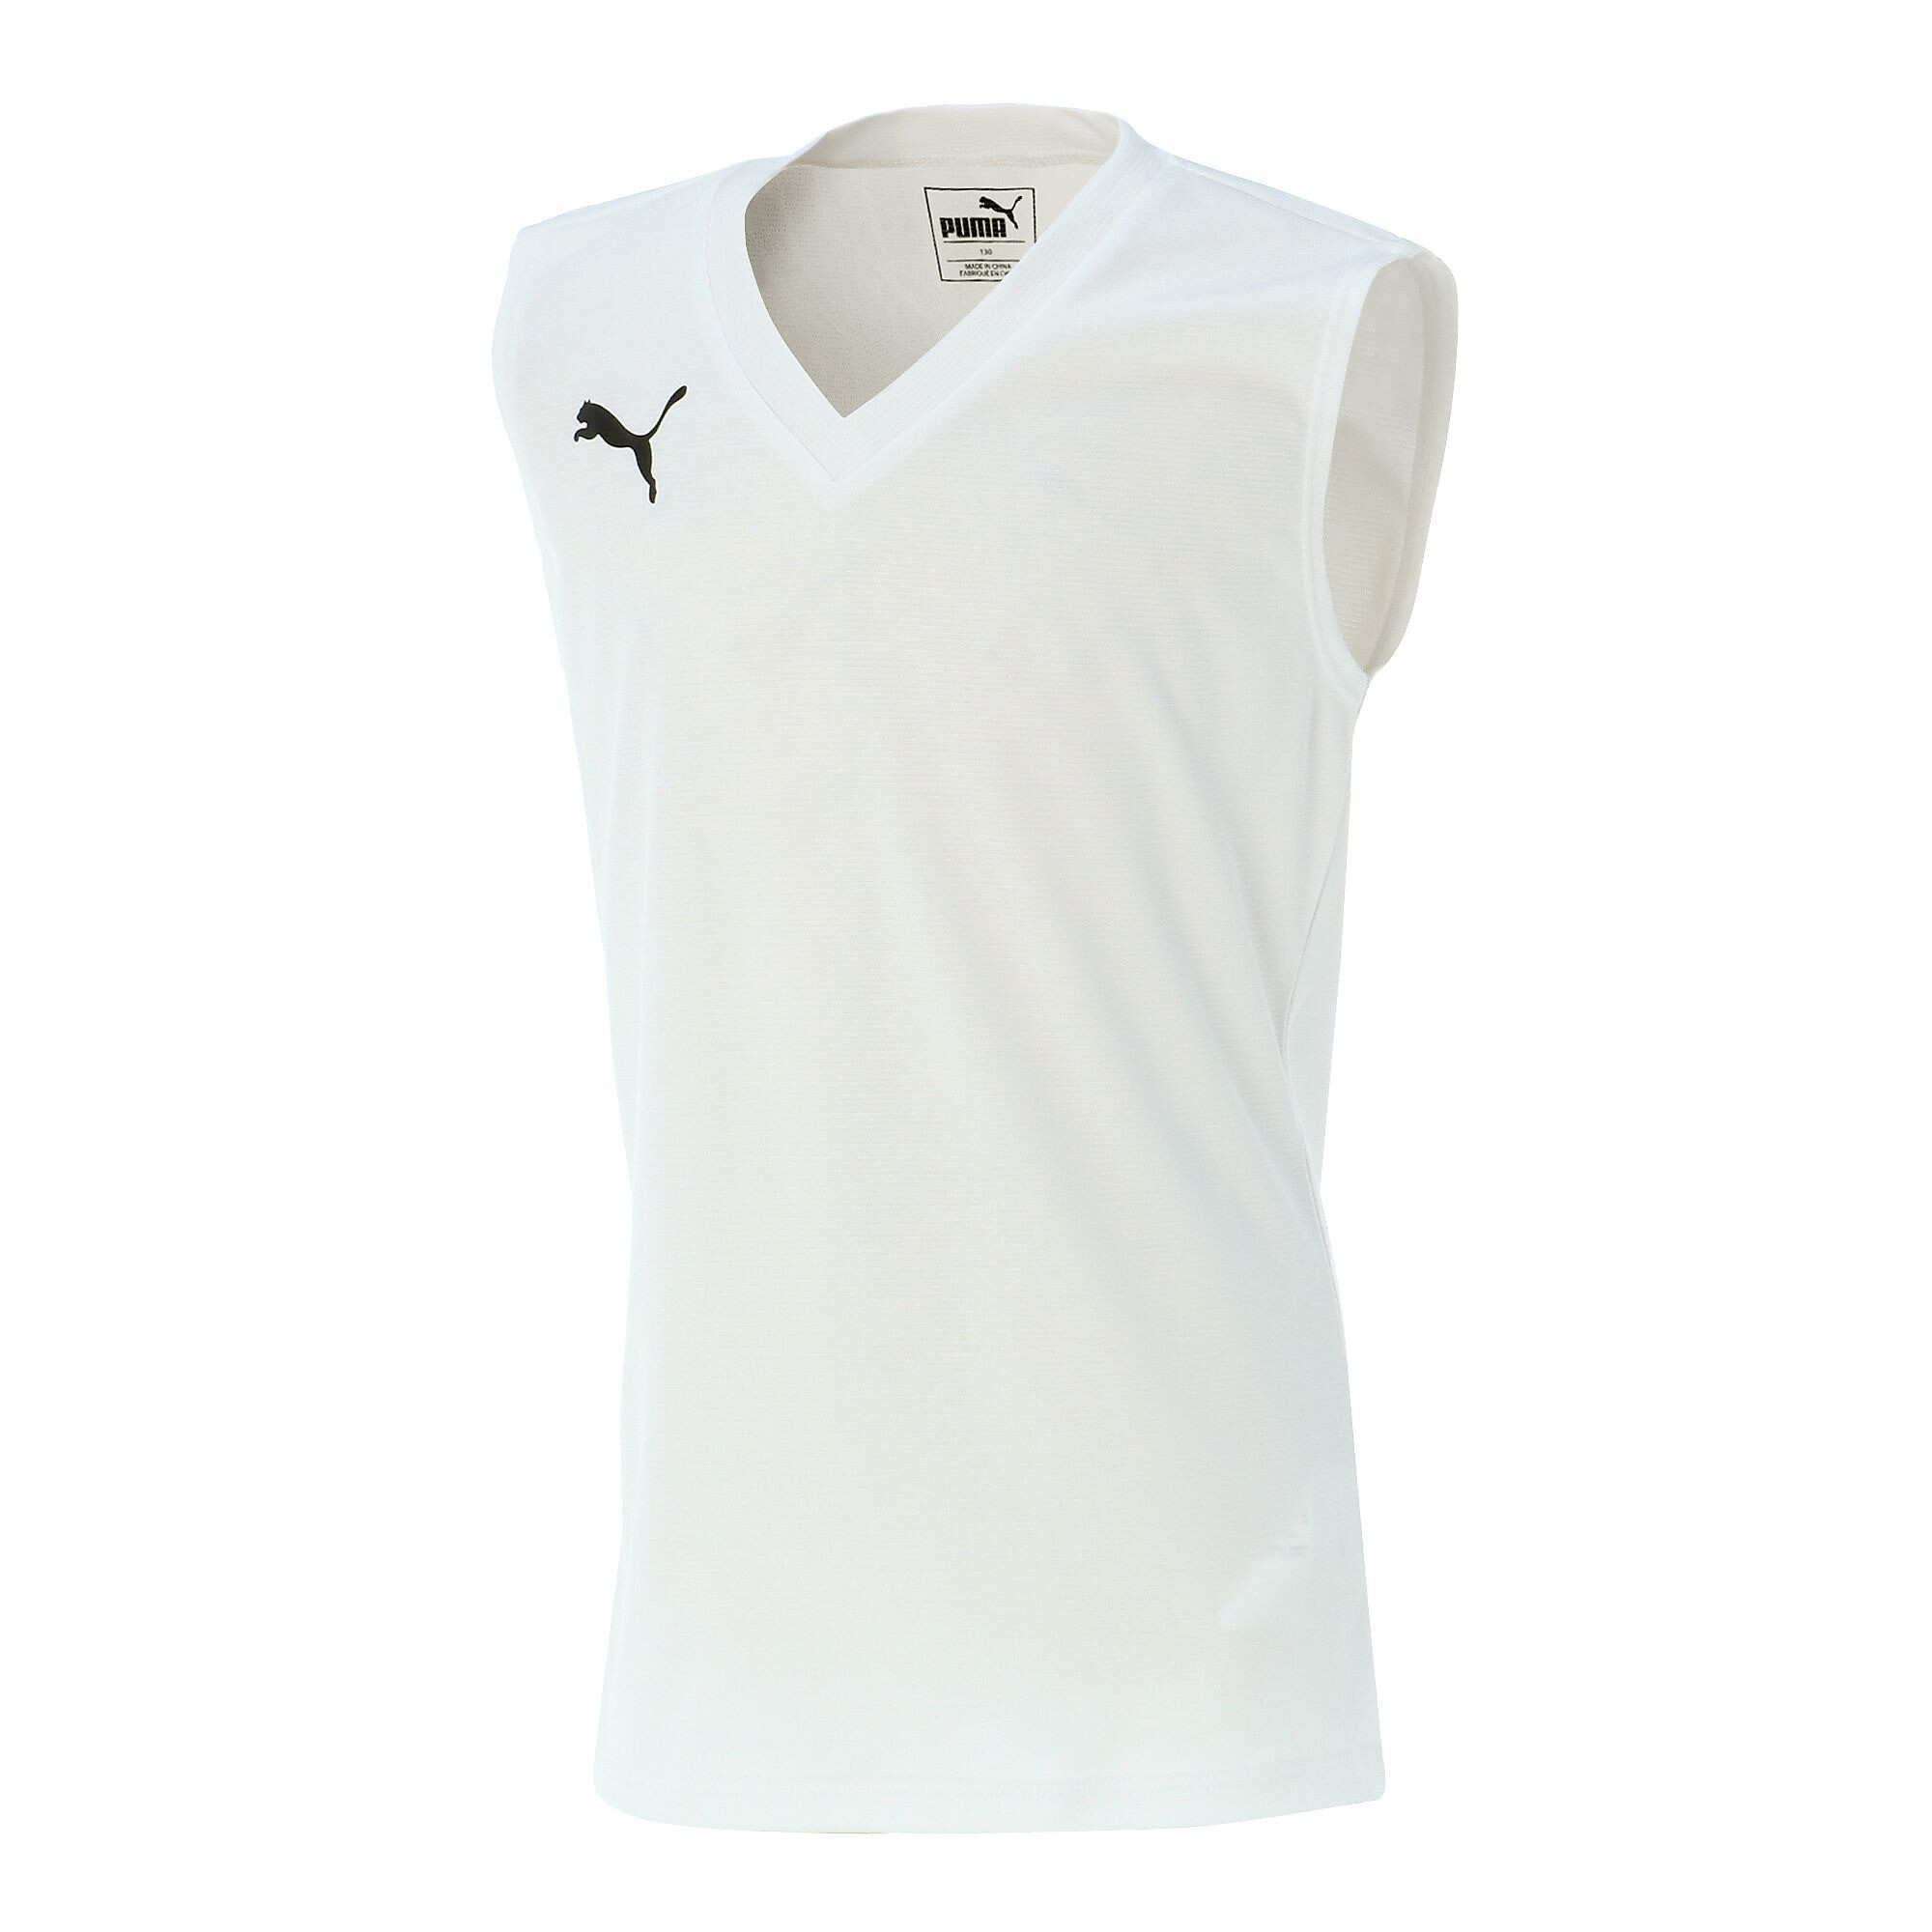 ＜プーマ公式通販＞ プーマ キッズ ジュニア SL サッカー インナーシャツ タンクトップ 120-160cm メンズ Puma White ｜PUMA.com